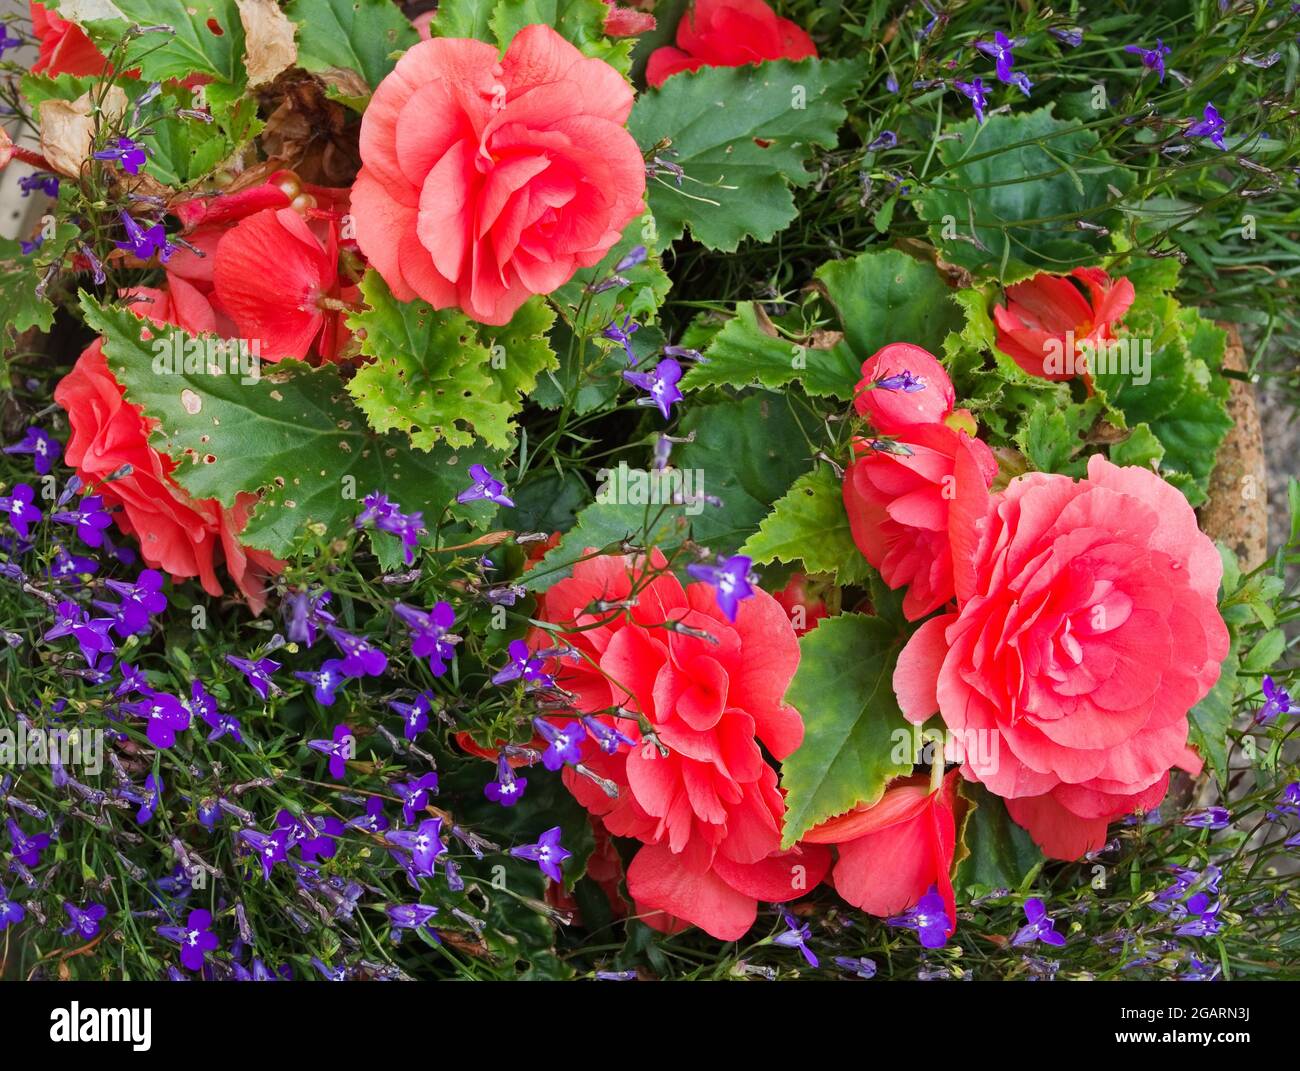 Fleurs de la fin de l'été fleurs de la double begonia rose profond et lobélie bleu/pourpre en terre cuite pot, août Angleterre Royaume-Uni Banque D'Images